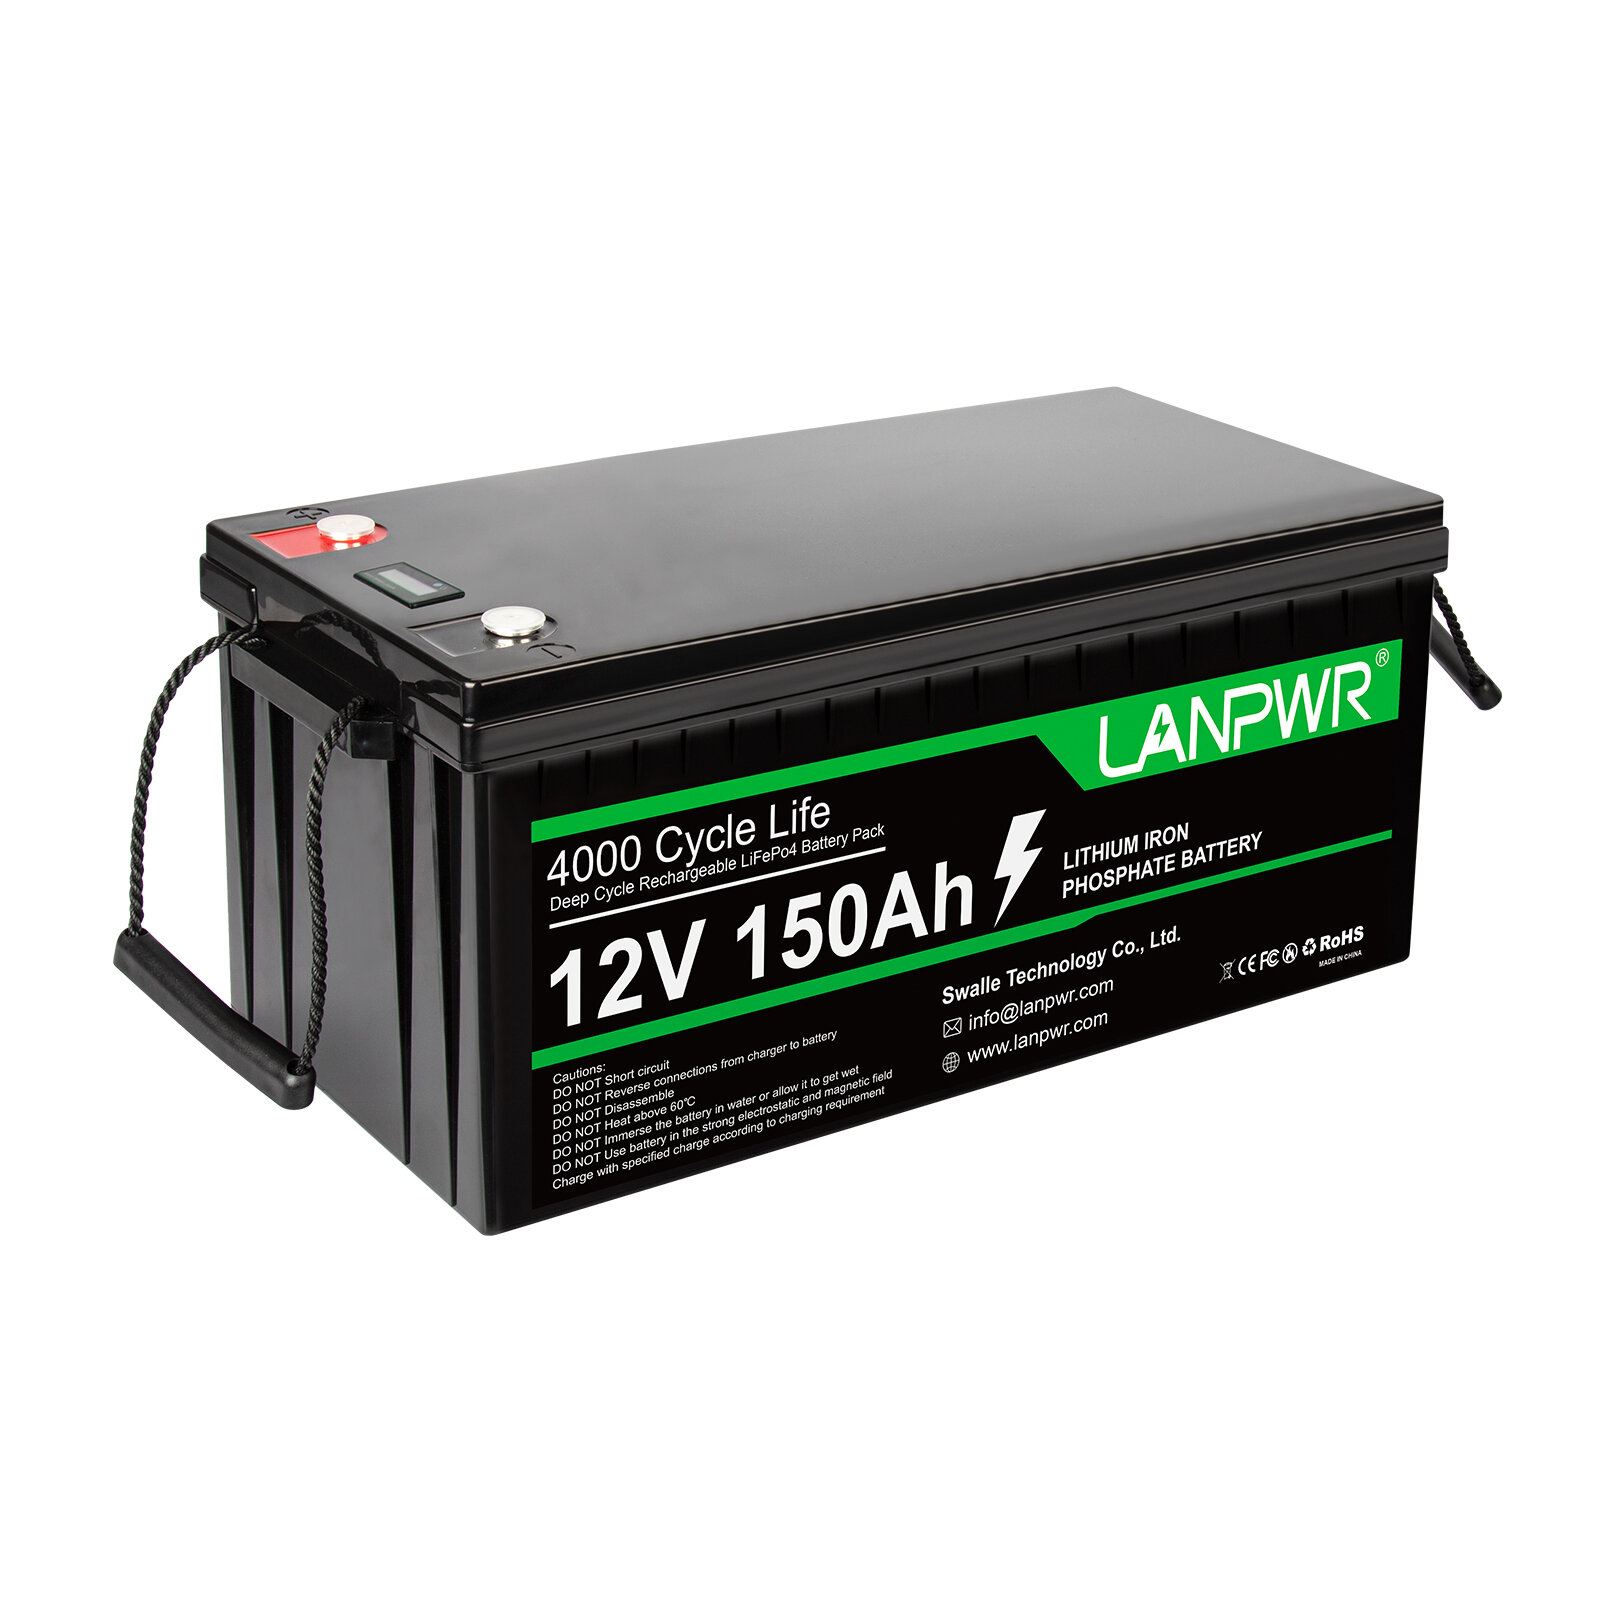 [EU Direct] LANPWR 12V 150Ah LiFePO4 Batteriepack mit 1920Wh Lithium-Batterie, integriertem 100A BMS und IP65 wasserdicht, um die meisten Backup-Stromquellen, Heimspeicher und Off-Grid-Systeme zu ersetzen.